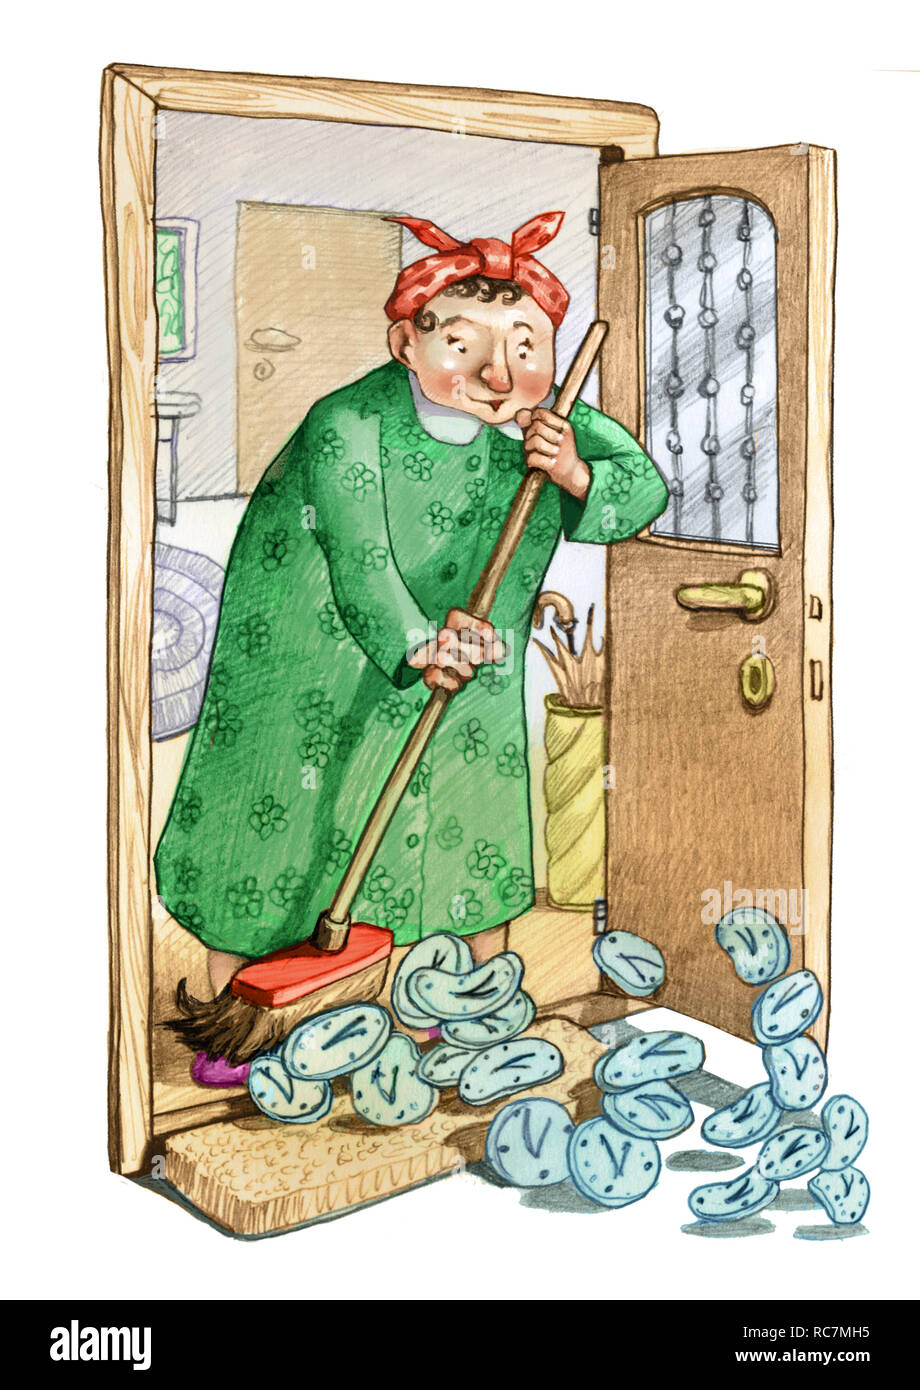 Hausfrau reinigt Haus fegt einige Uhren Metapher von der verlorenen Zeit das nicht Bleistift zeichnen Humor Illustration zurück Stockfoto